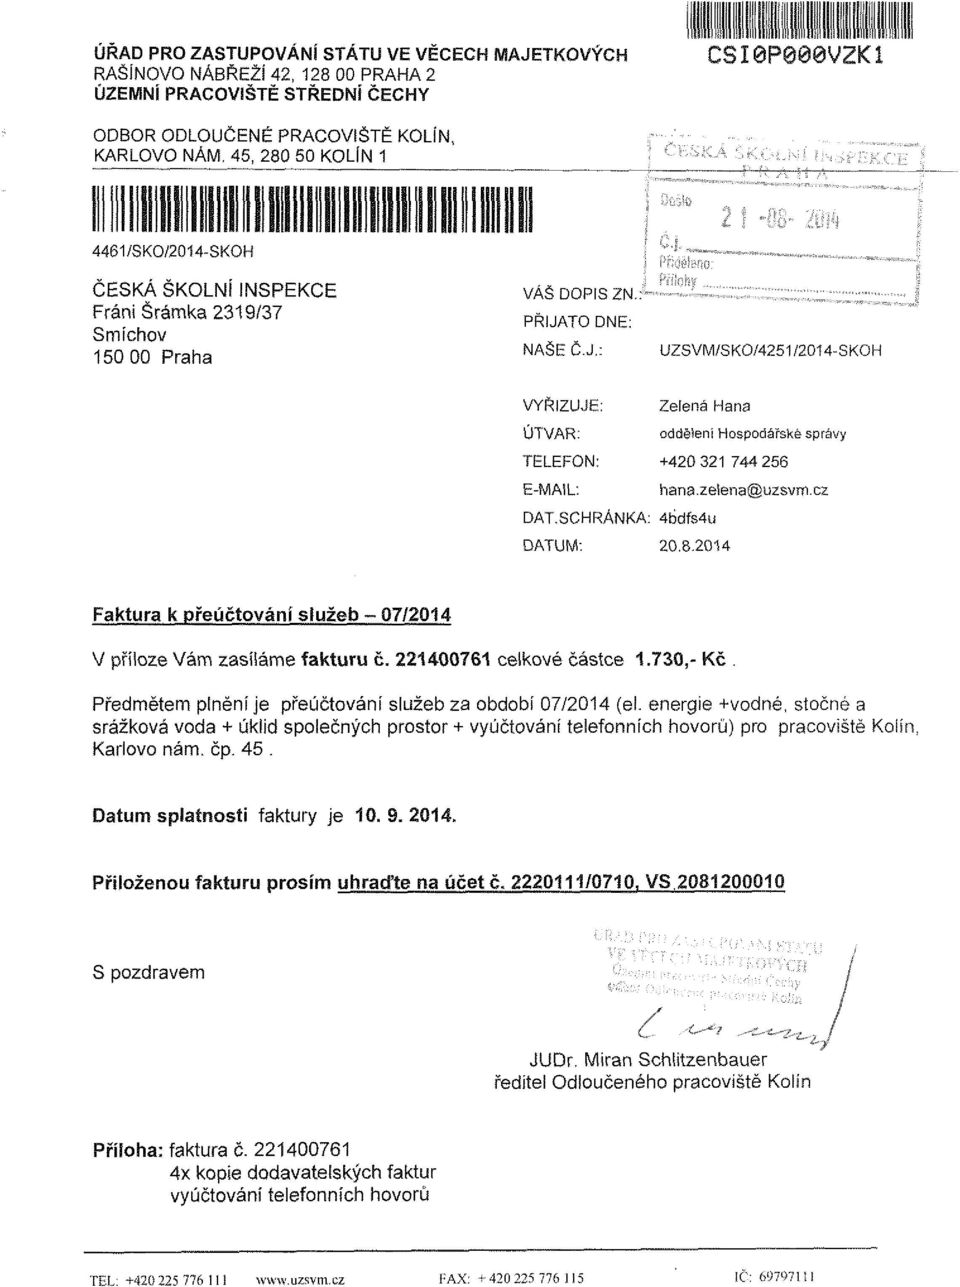 zelena@uzsvrri.cz DAT.SCHRÁNKA: 4bdfs4u DATUM: 20.8.2014 Faktura k přeúčtování služeb - 07/2014 V příloze Vám zasíláme fakturu č. 221400761 celkové částce 1.